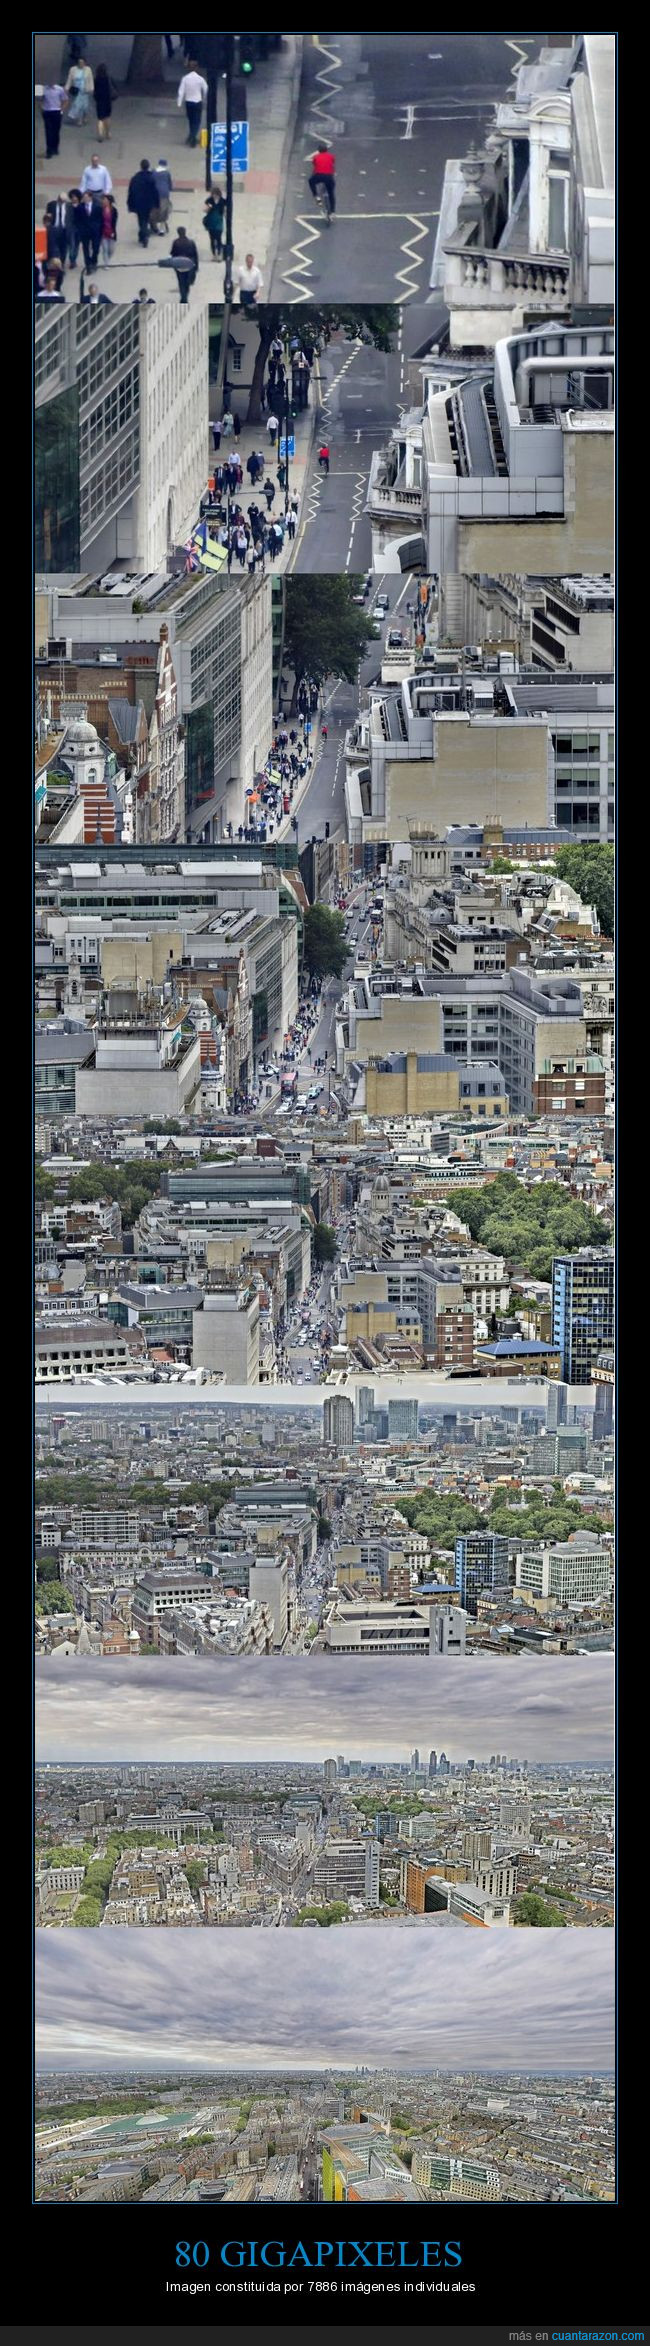 Imagen,Londres,gigapixel